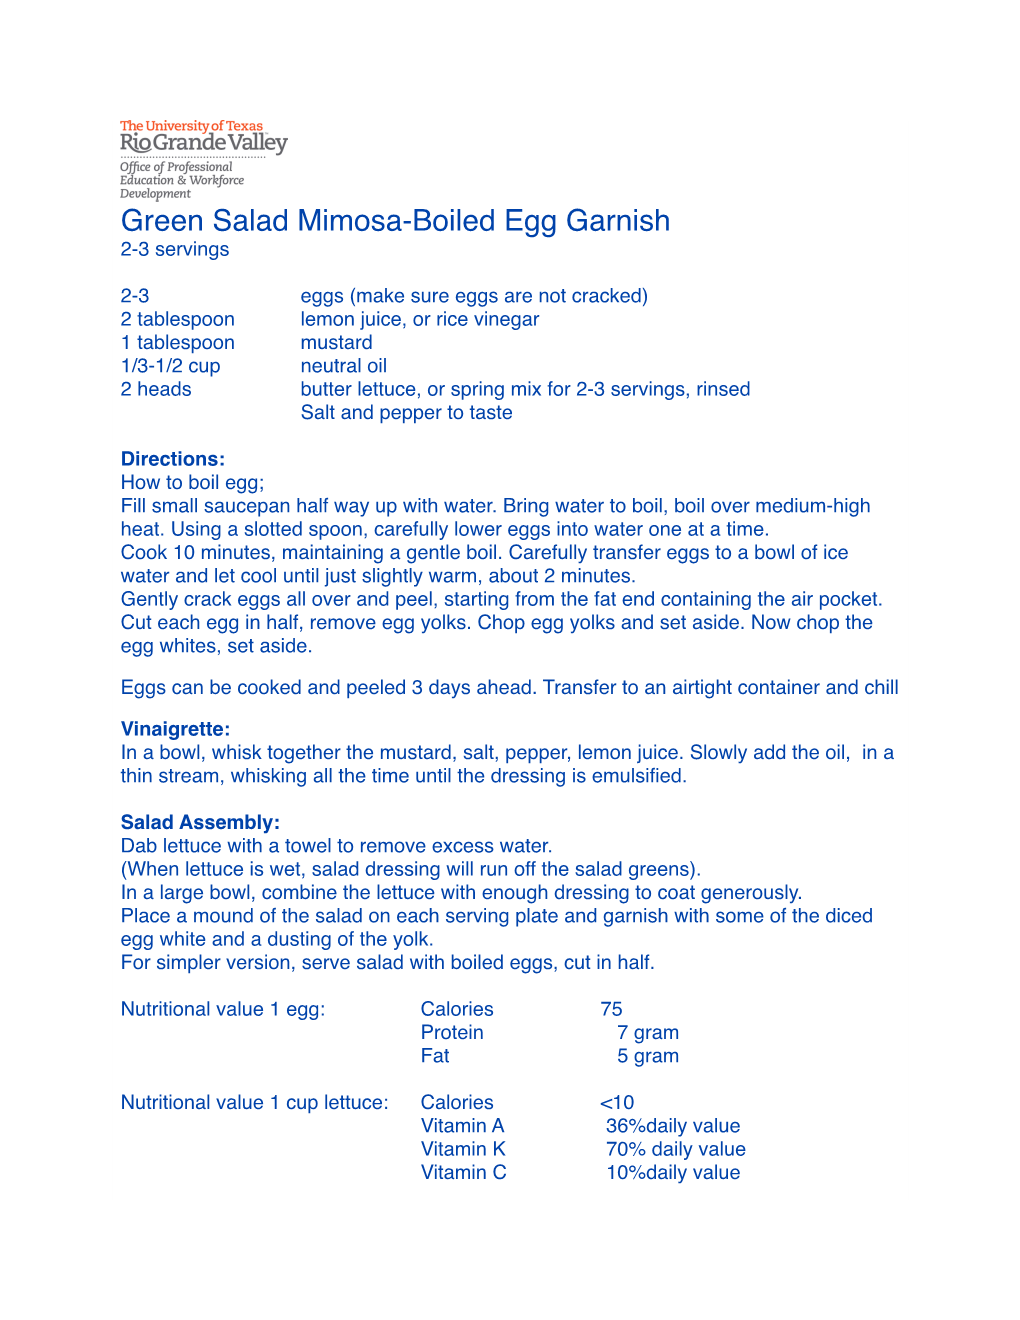 Green Salad Mimosa-Boiled Egg Garnish 2-3 Servings